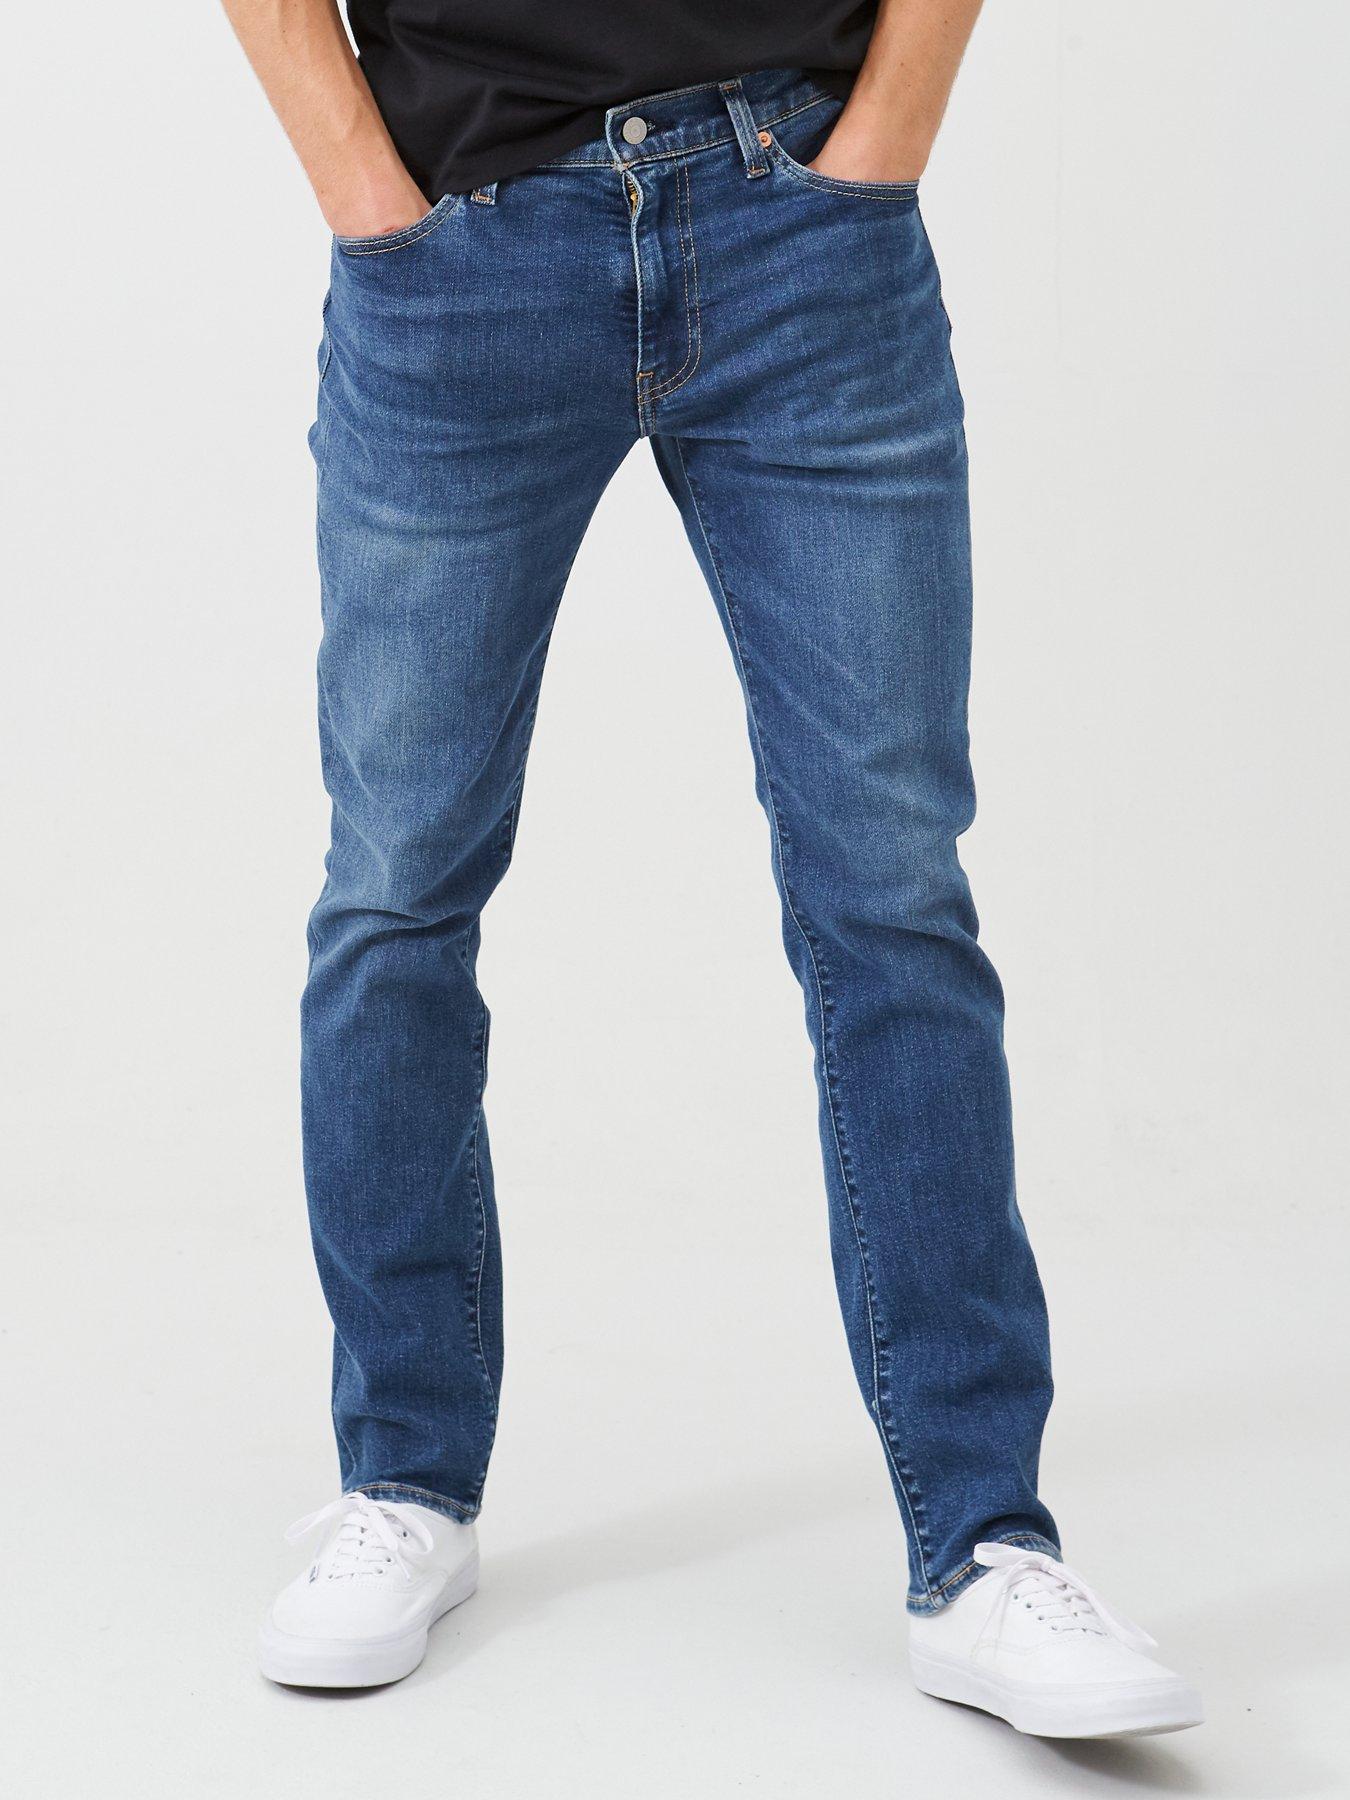 levis jeans uk mens